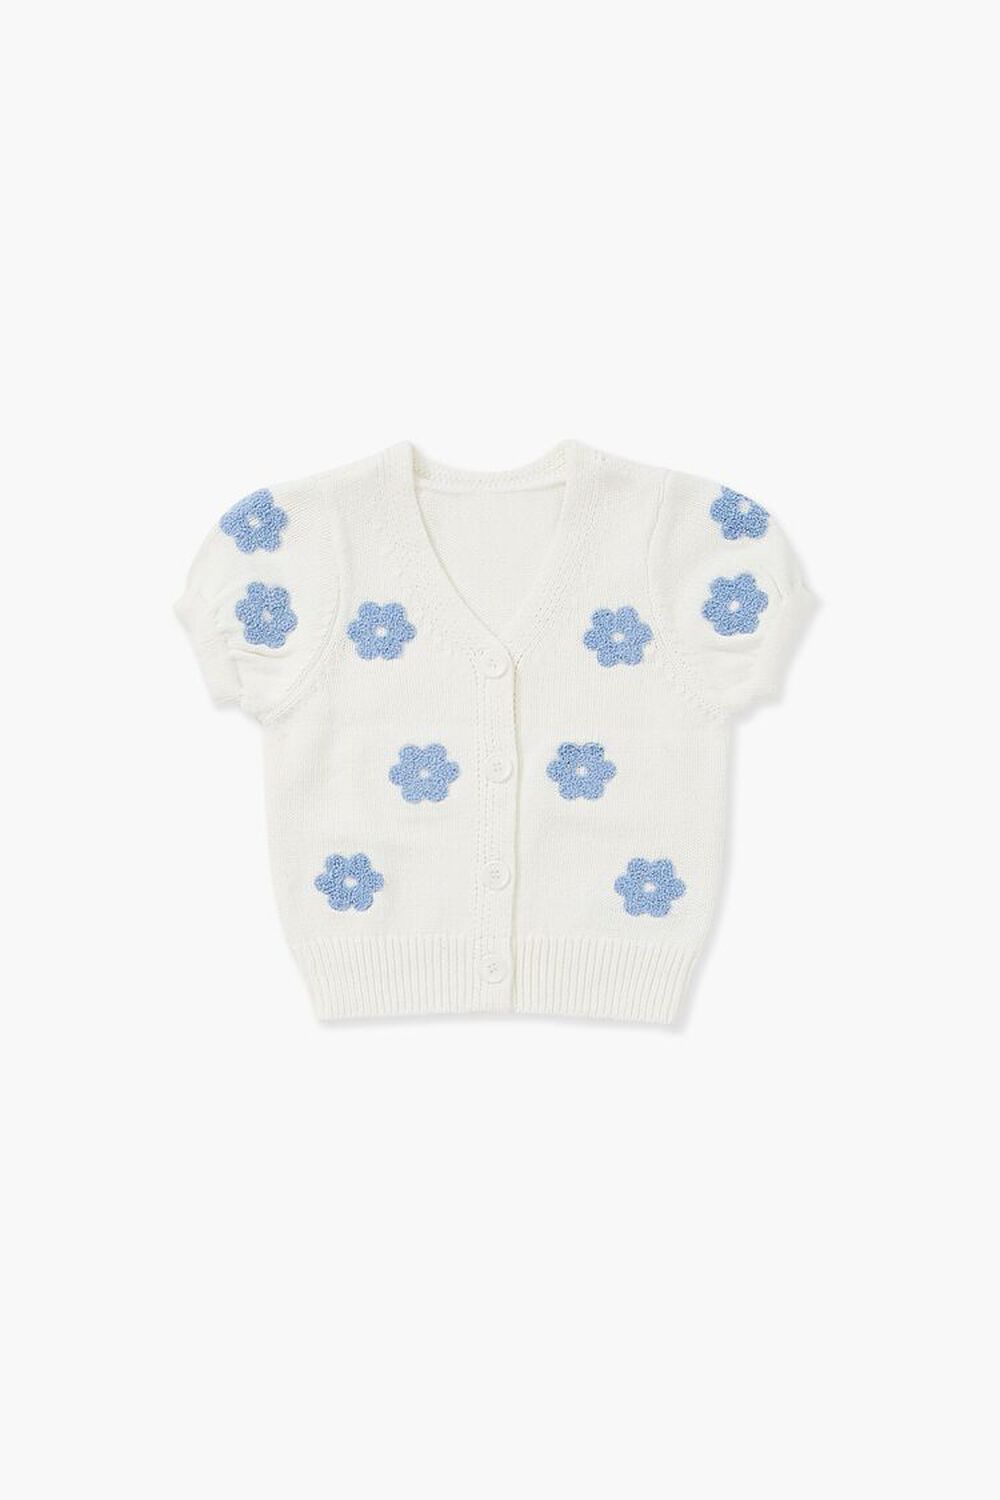 WHITE/MULTI Girls Floral Cardigan Sweater (Kids), image 1